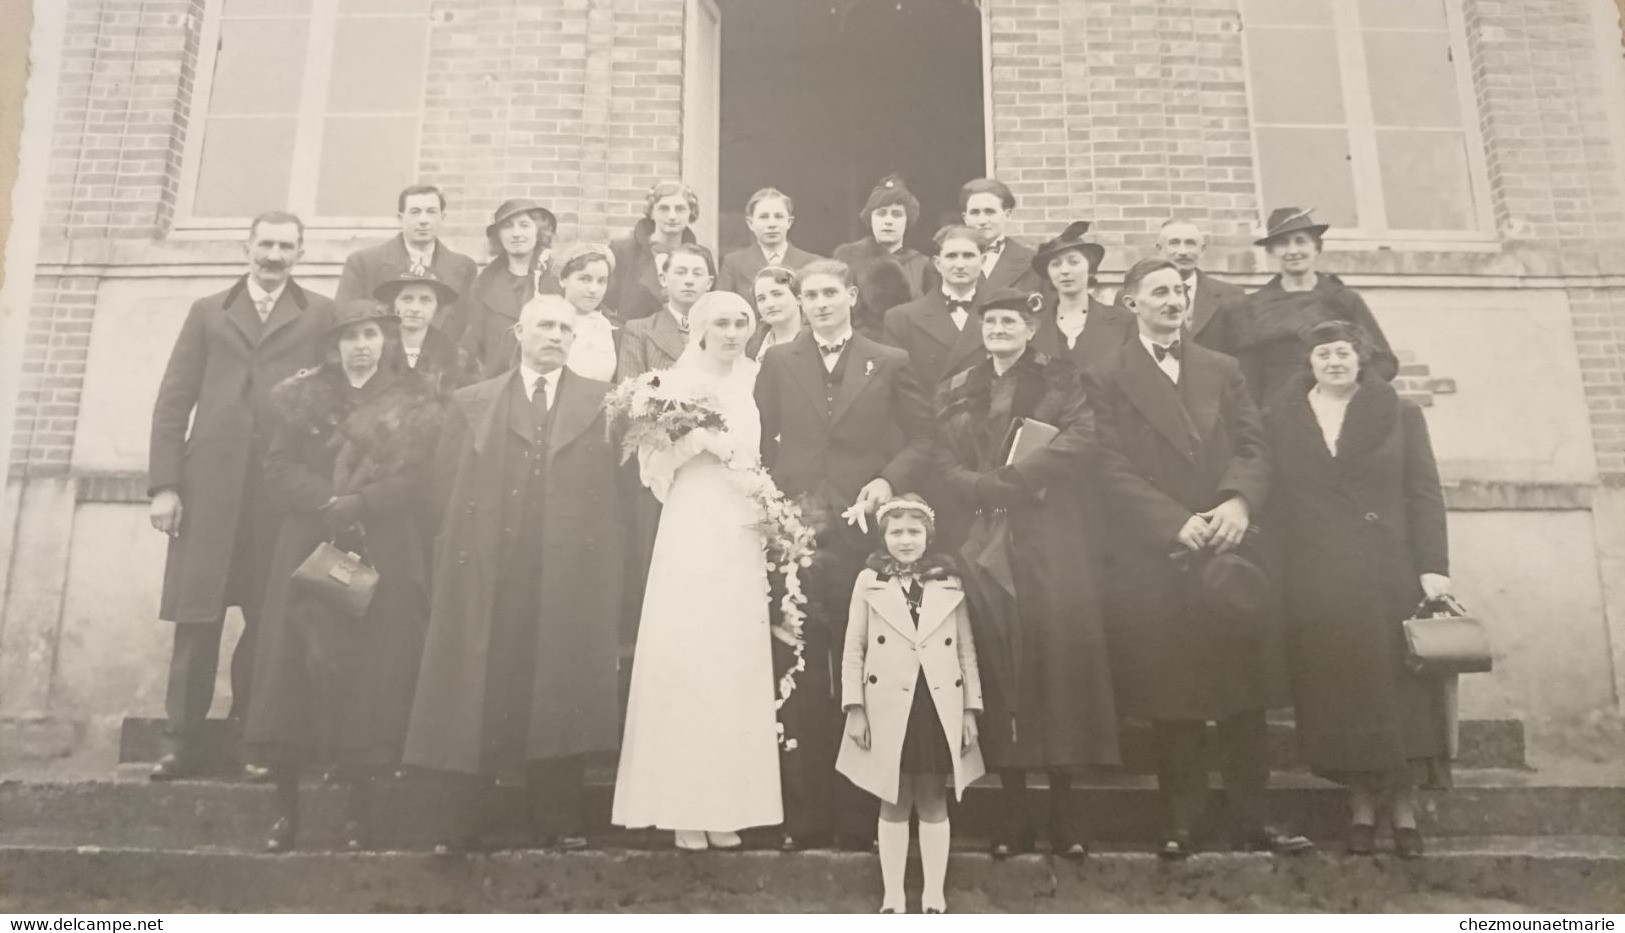 1937 SAINT PRIVE? - MARIAGE DE ANDRE DELAVEAU ET JEANNE PLOTIN - PHOTO YONNE 23*17 CM - Identifizierten Personen